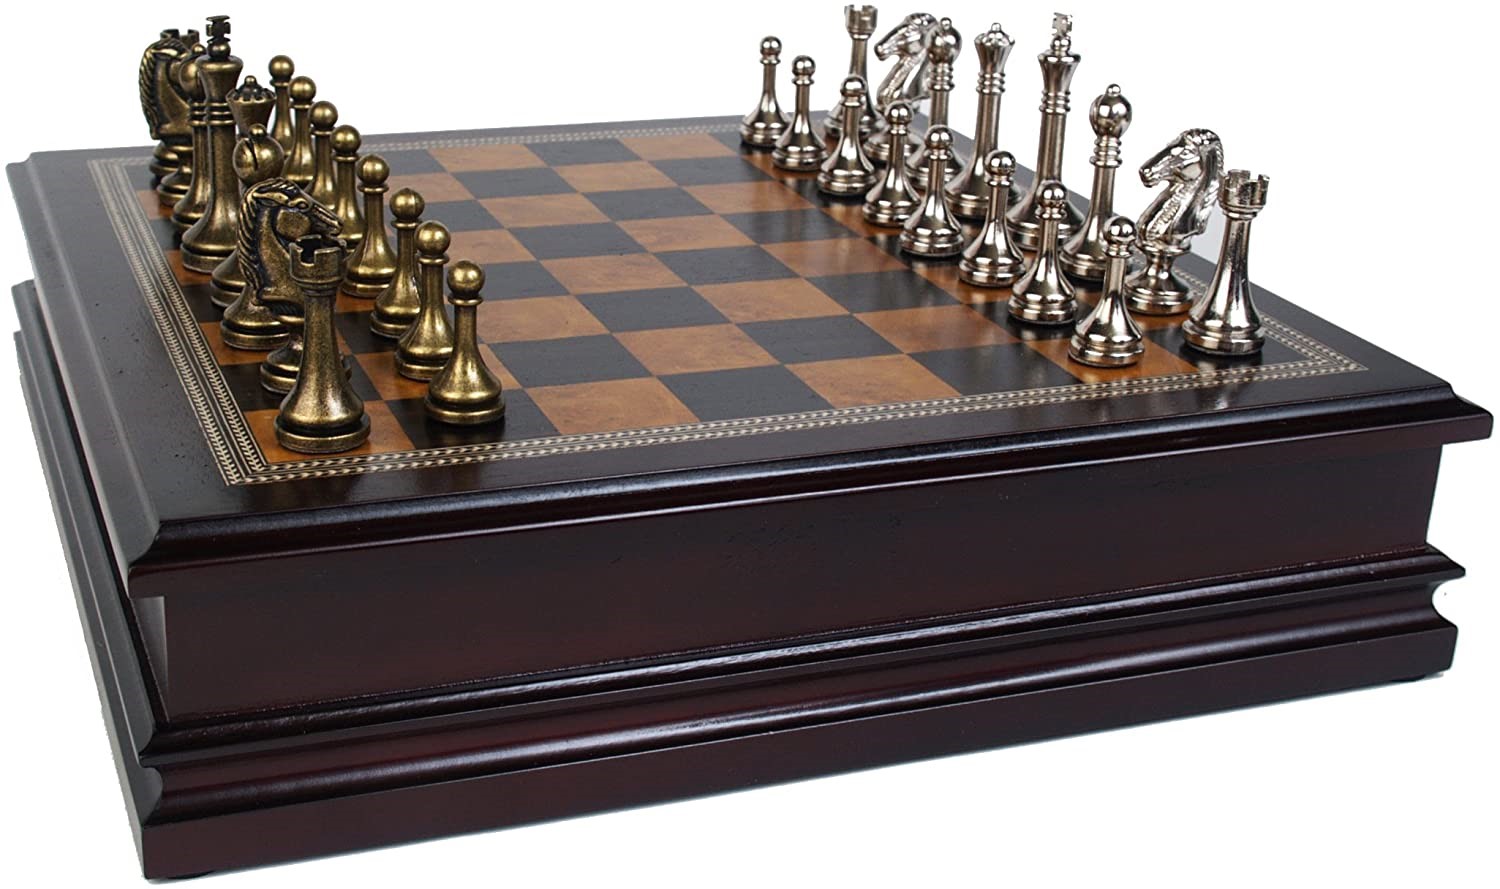 Juego de ajedrez de madera y metal de la colección Classic Game